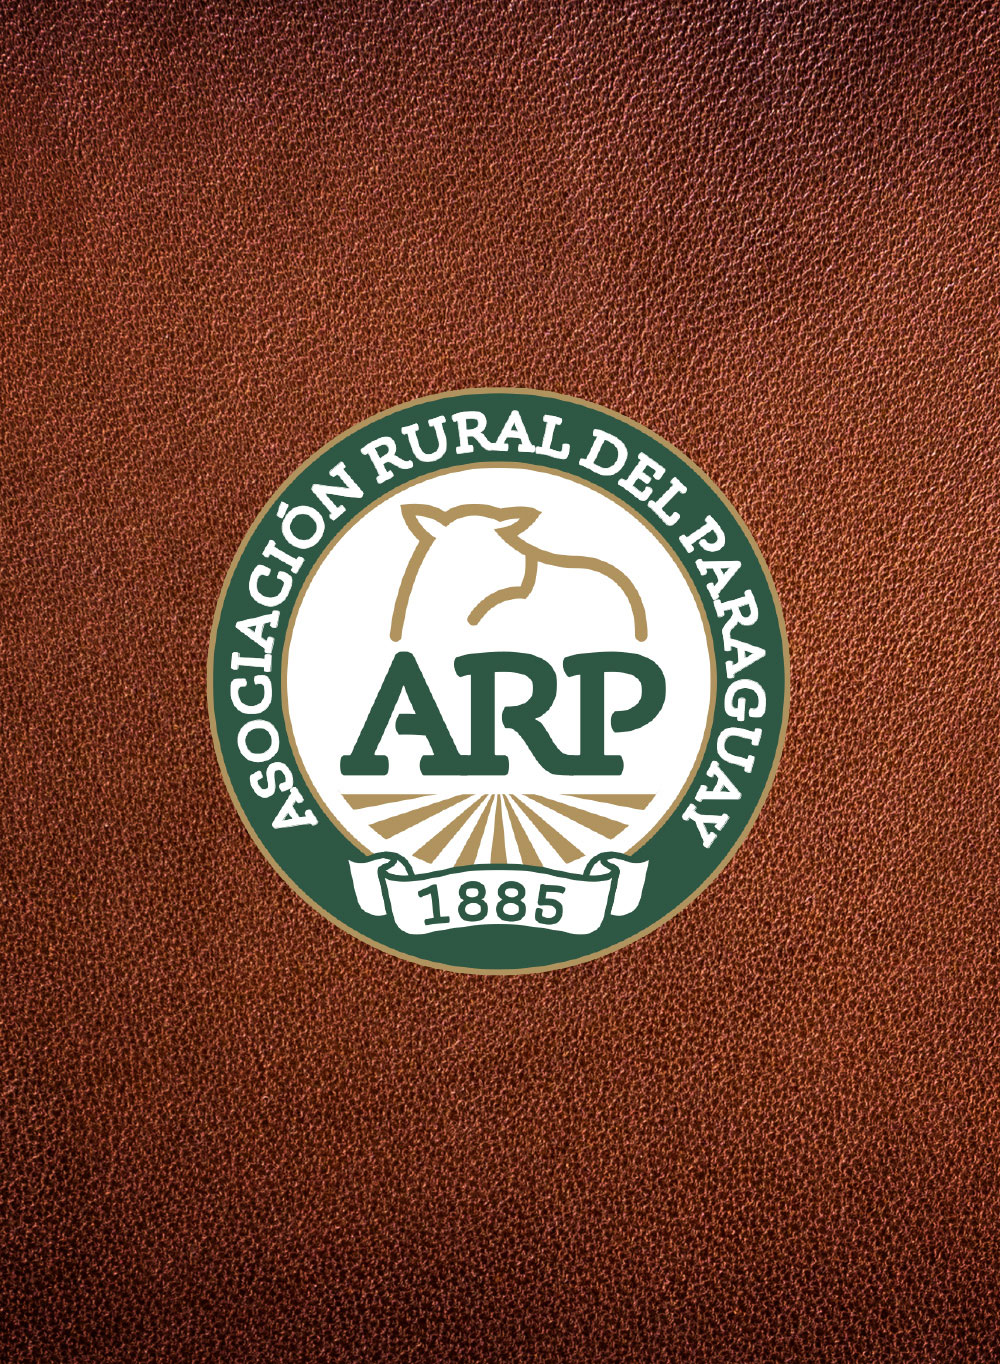 ARP Branding